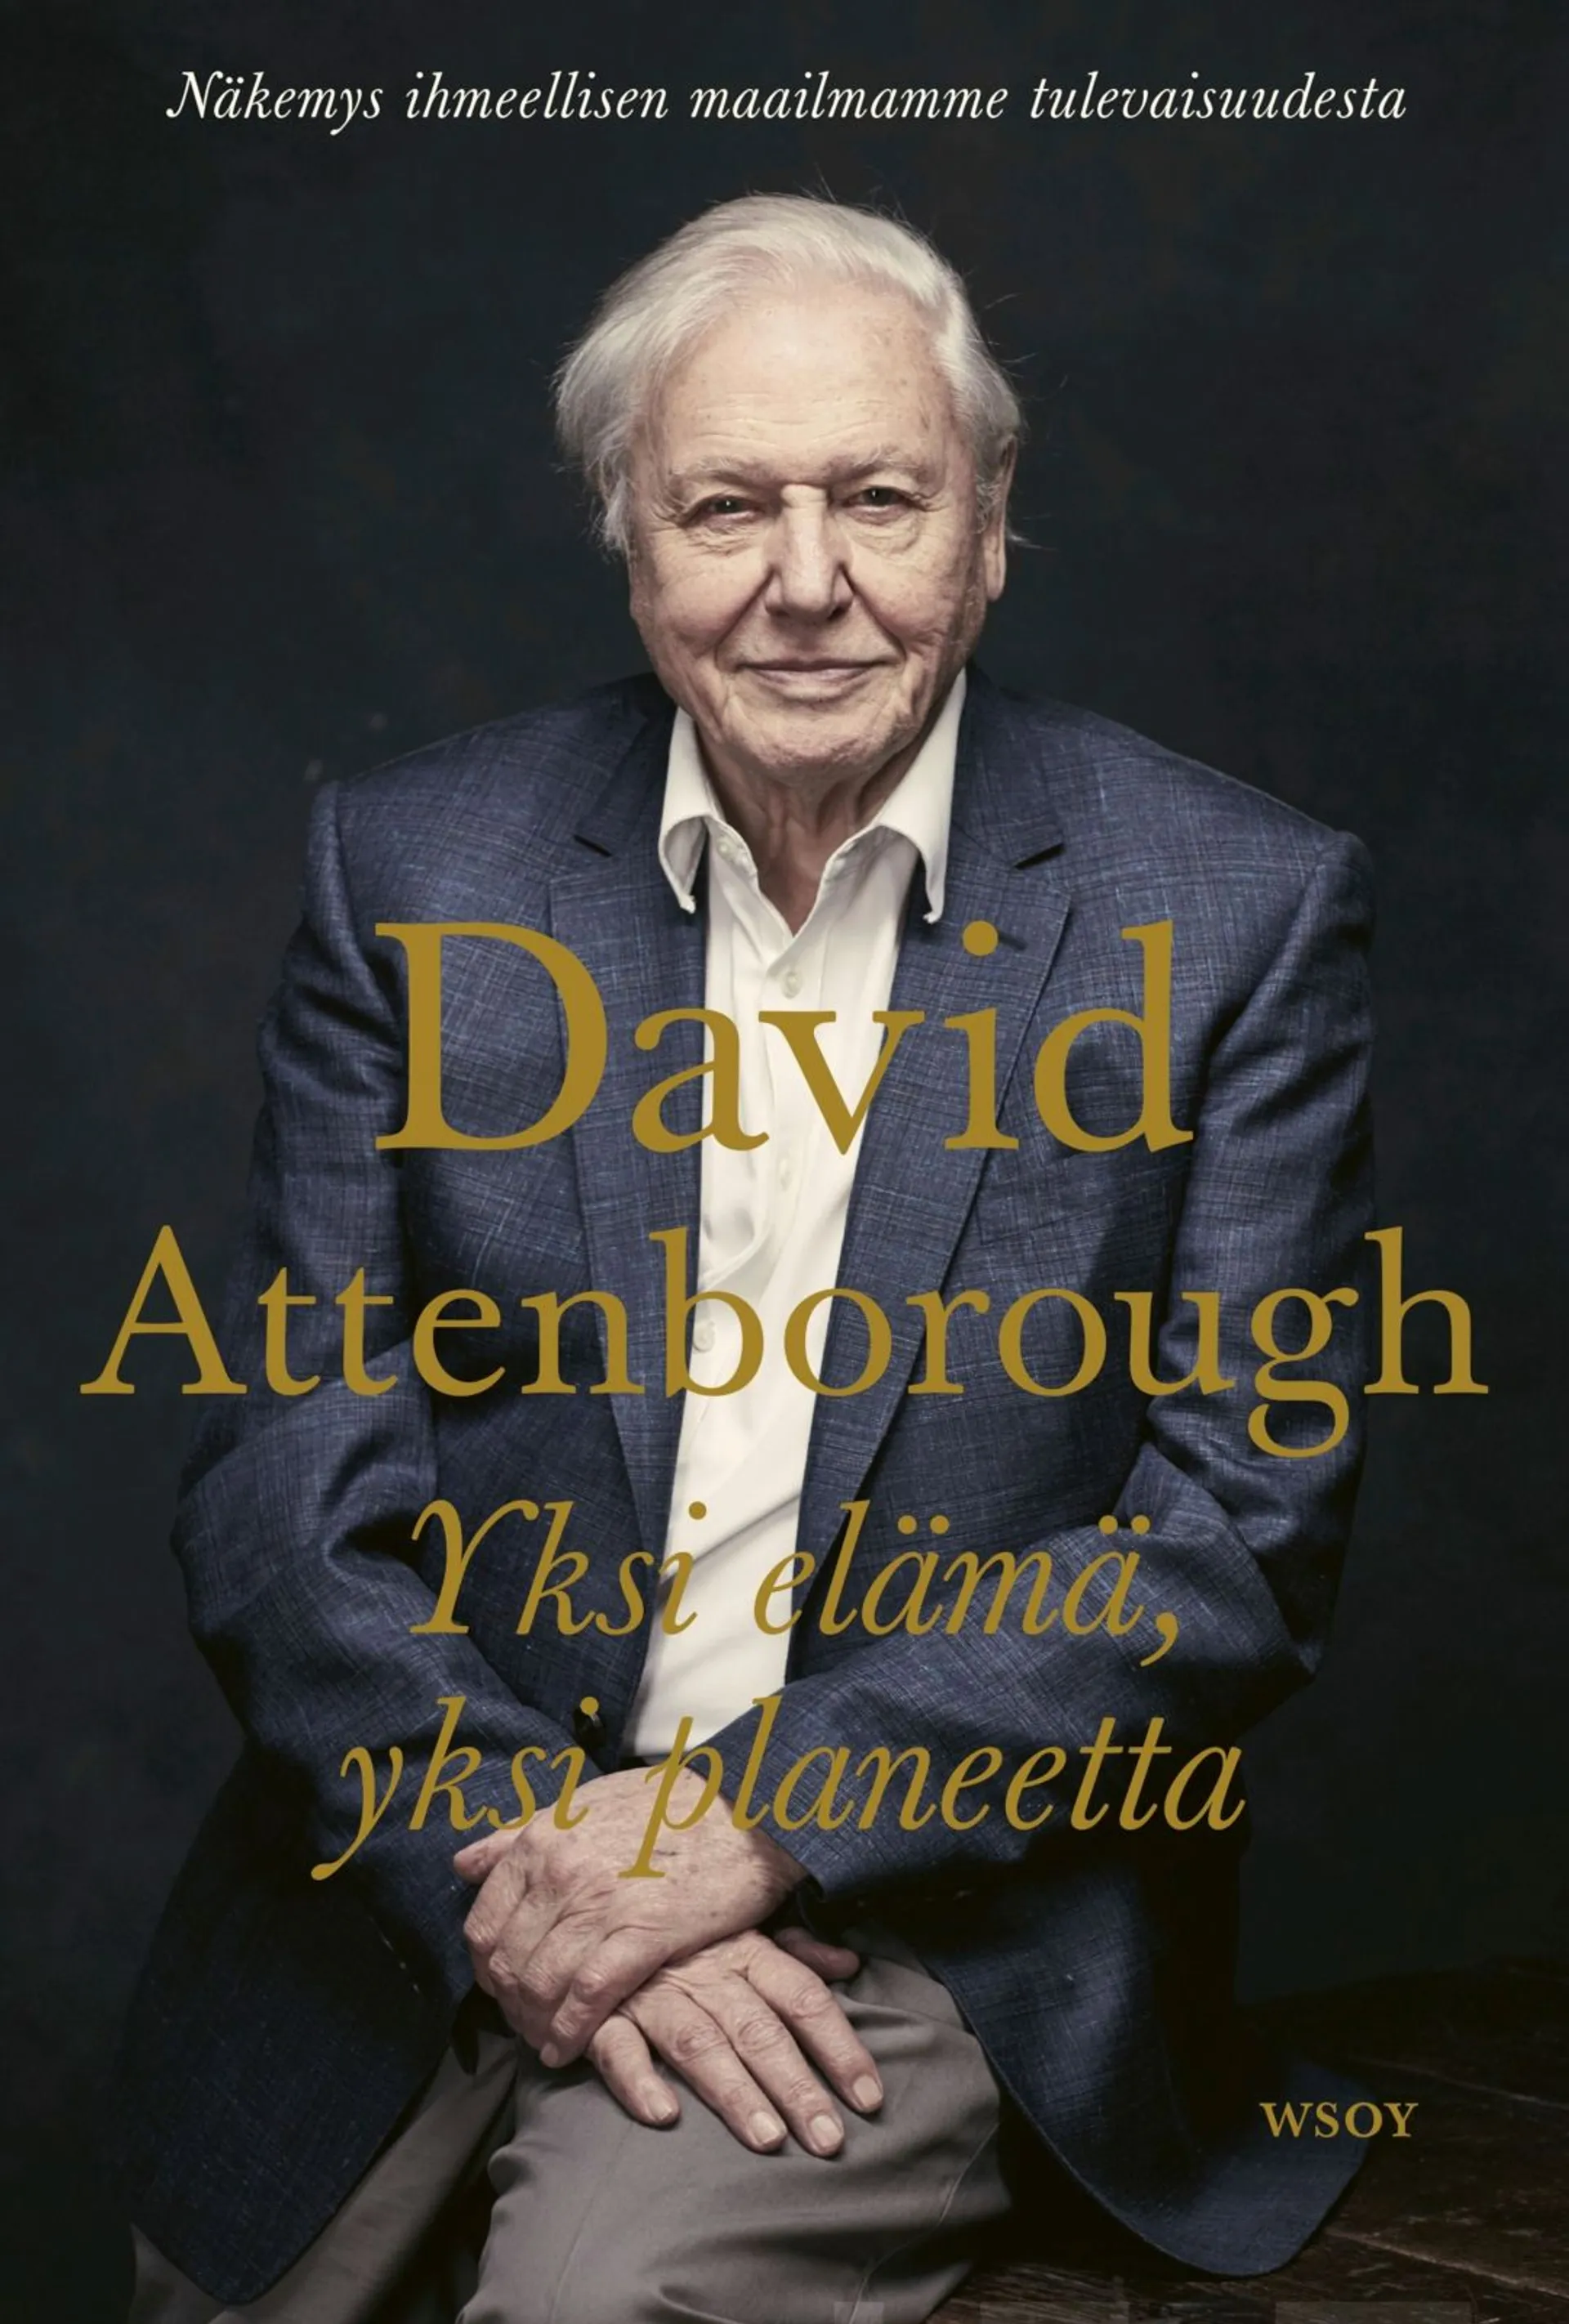 Attenborough, Yksi elämä, yksi planeetta - Näkemys ihmeellisen maailmamme tulevaisuudesta